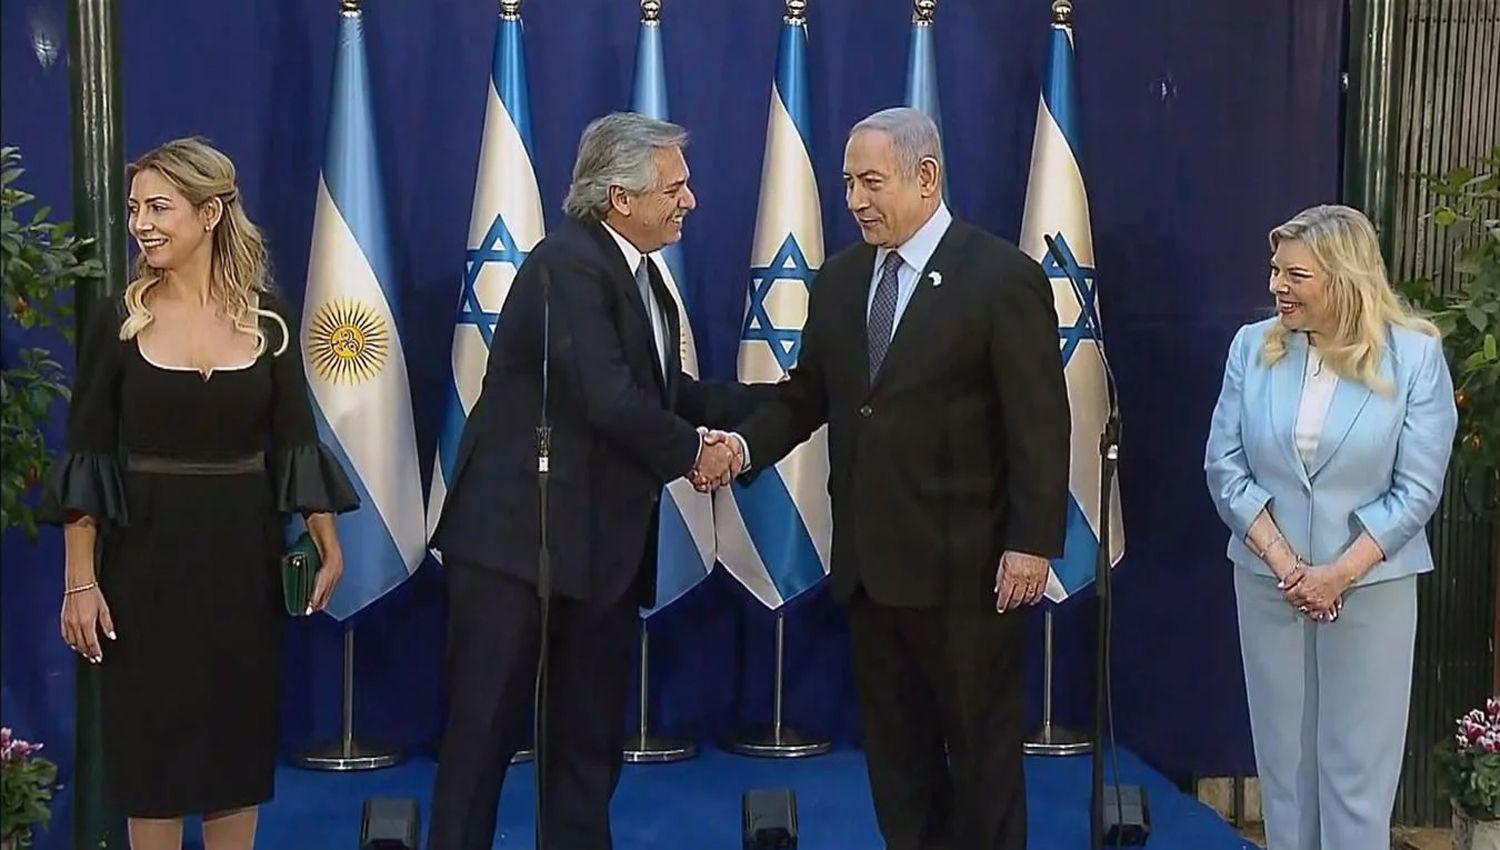 Alberto Fernaacutendez y Netanyahu se comprometieron a reforzar la relacioacuten bilateral y buscar acuerdos